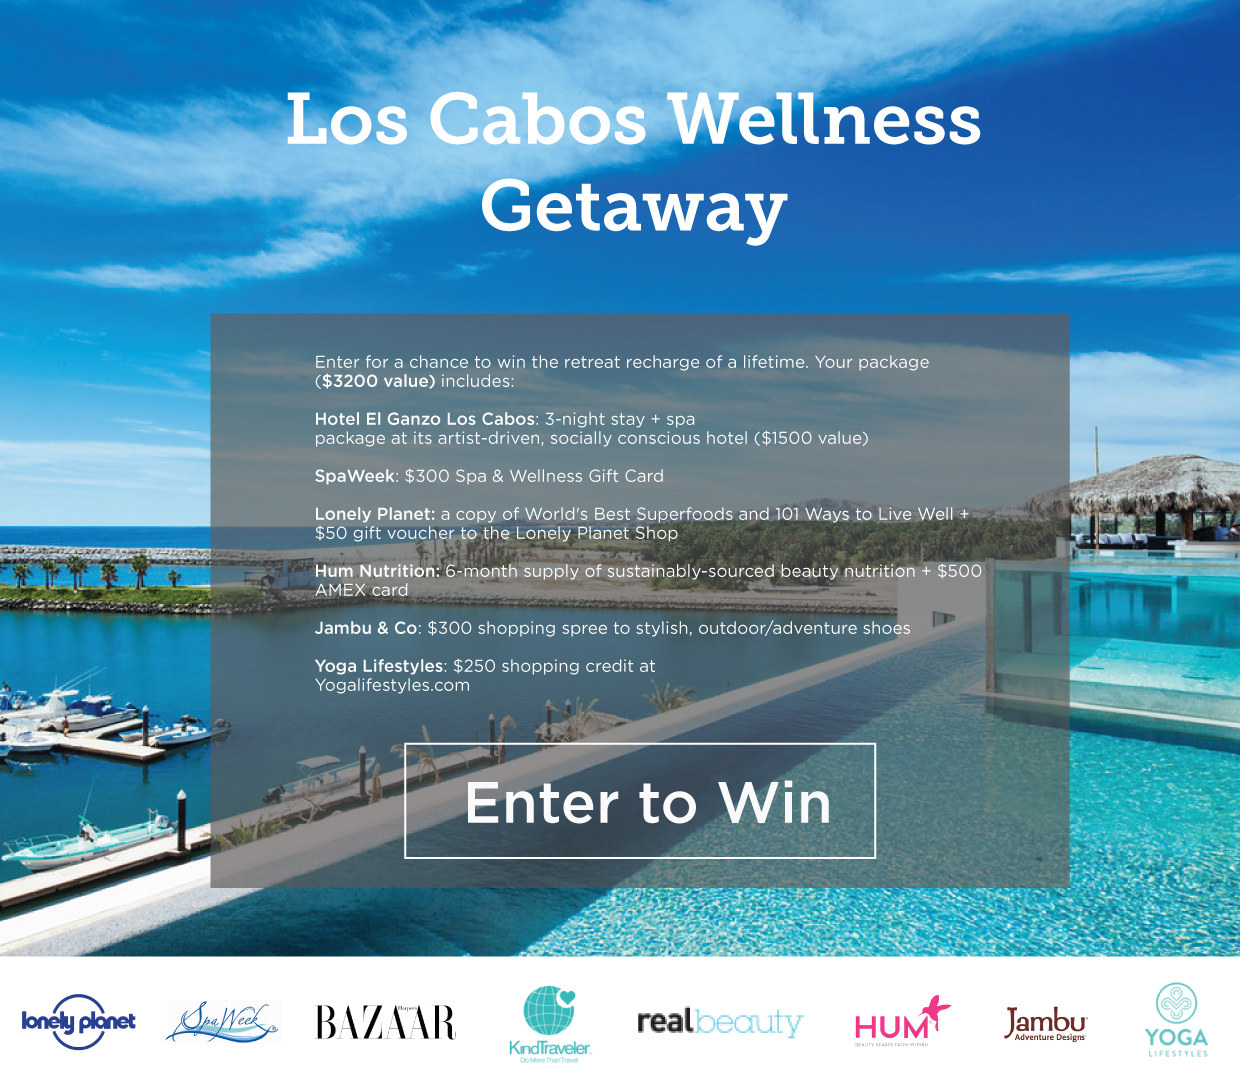 Los Cabos Wellness Getaway